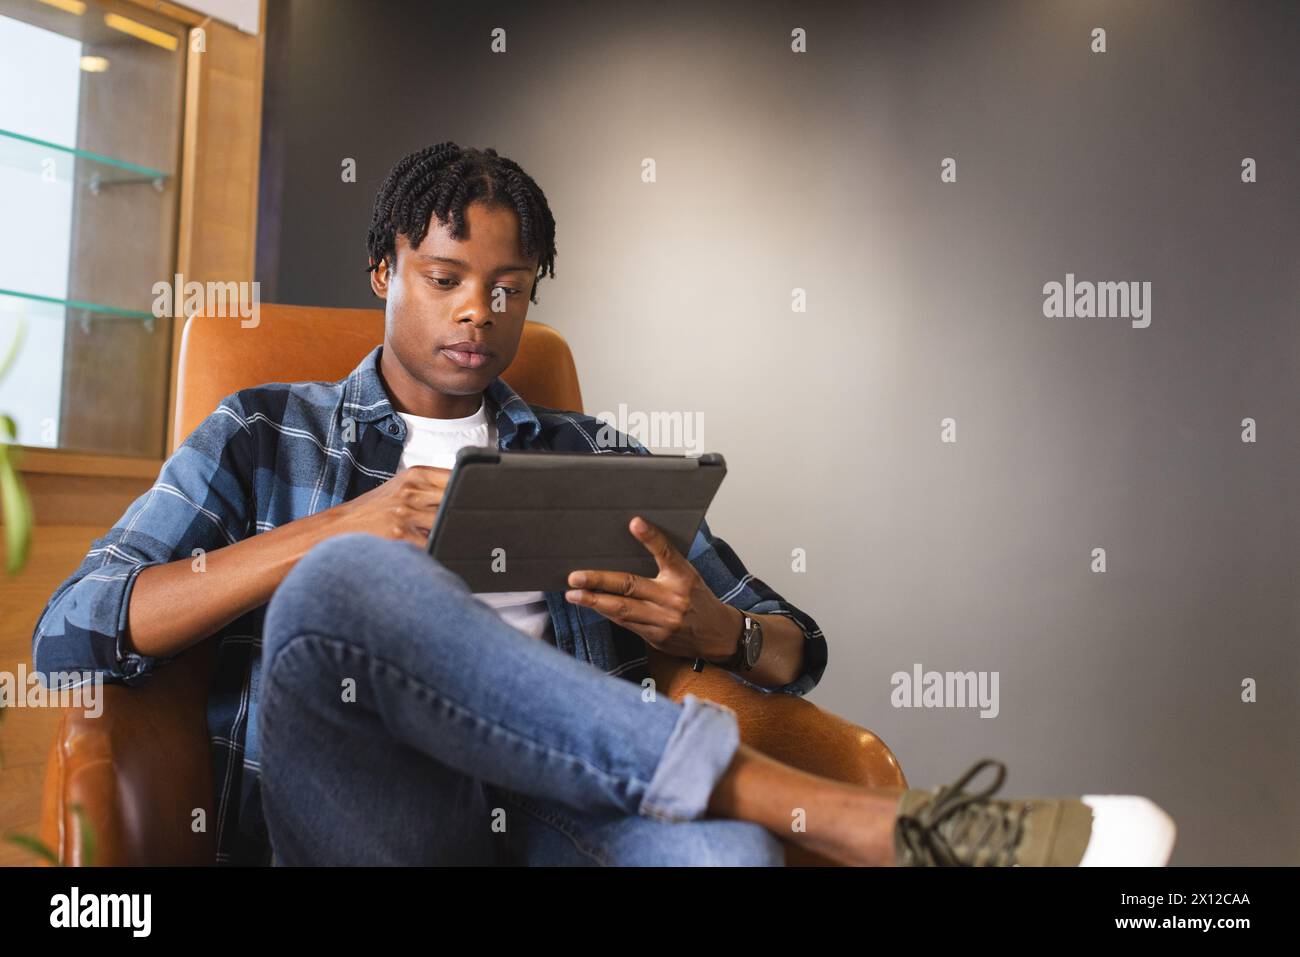 Uomo afroamericano seduto in un moderno ufficio aziendale, che usa un tablet con spazio per le copie. Ha i capelli neri corti, indossa abiti casual, inalterati Foto Stock